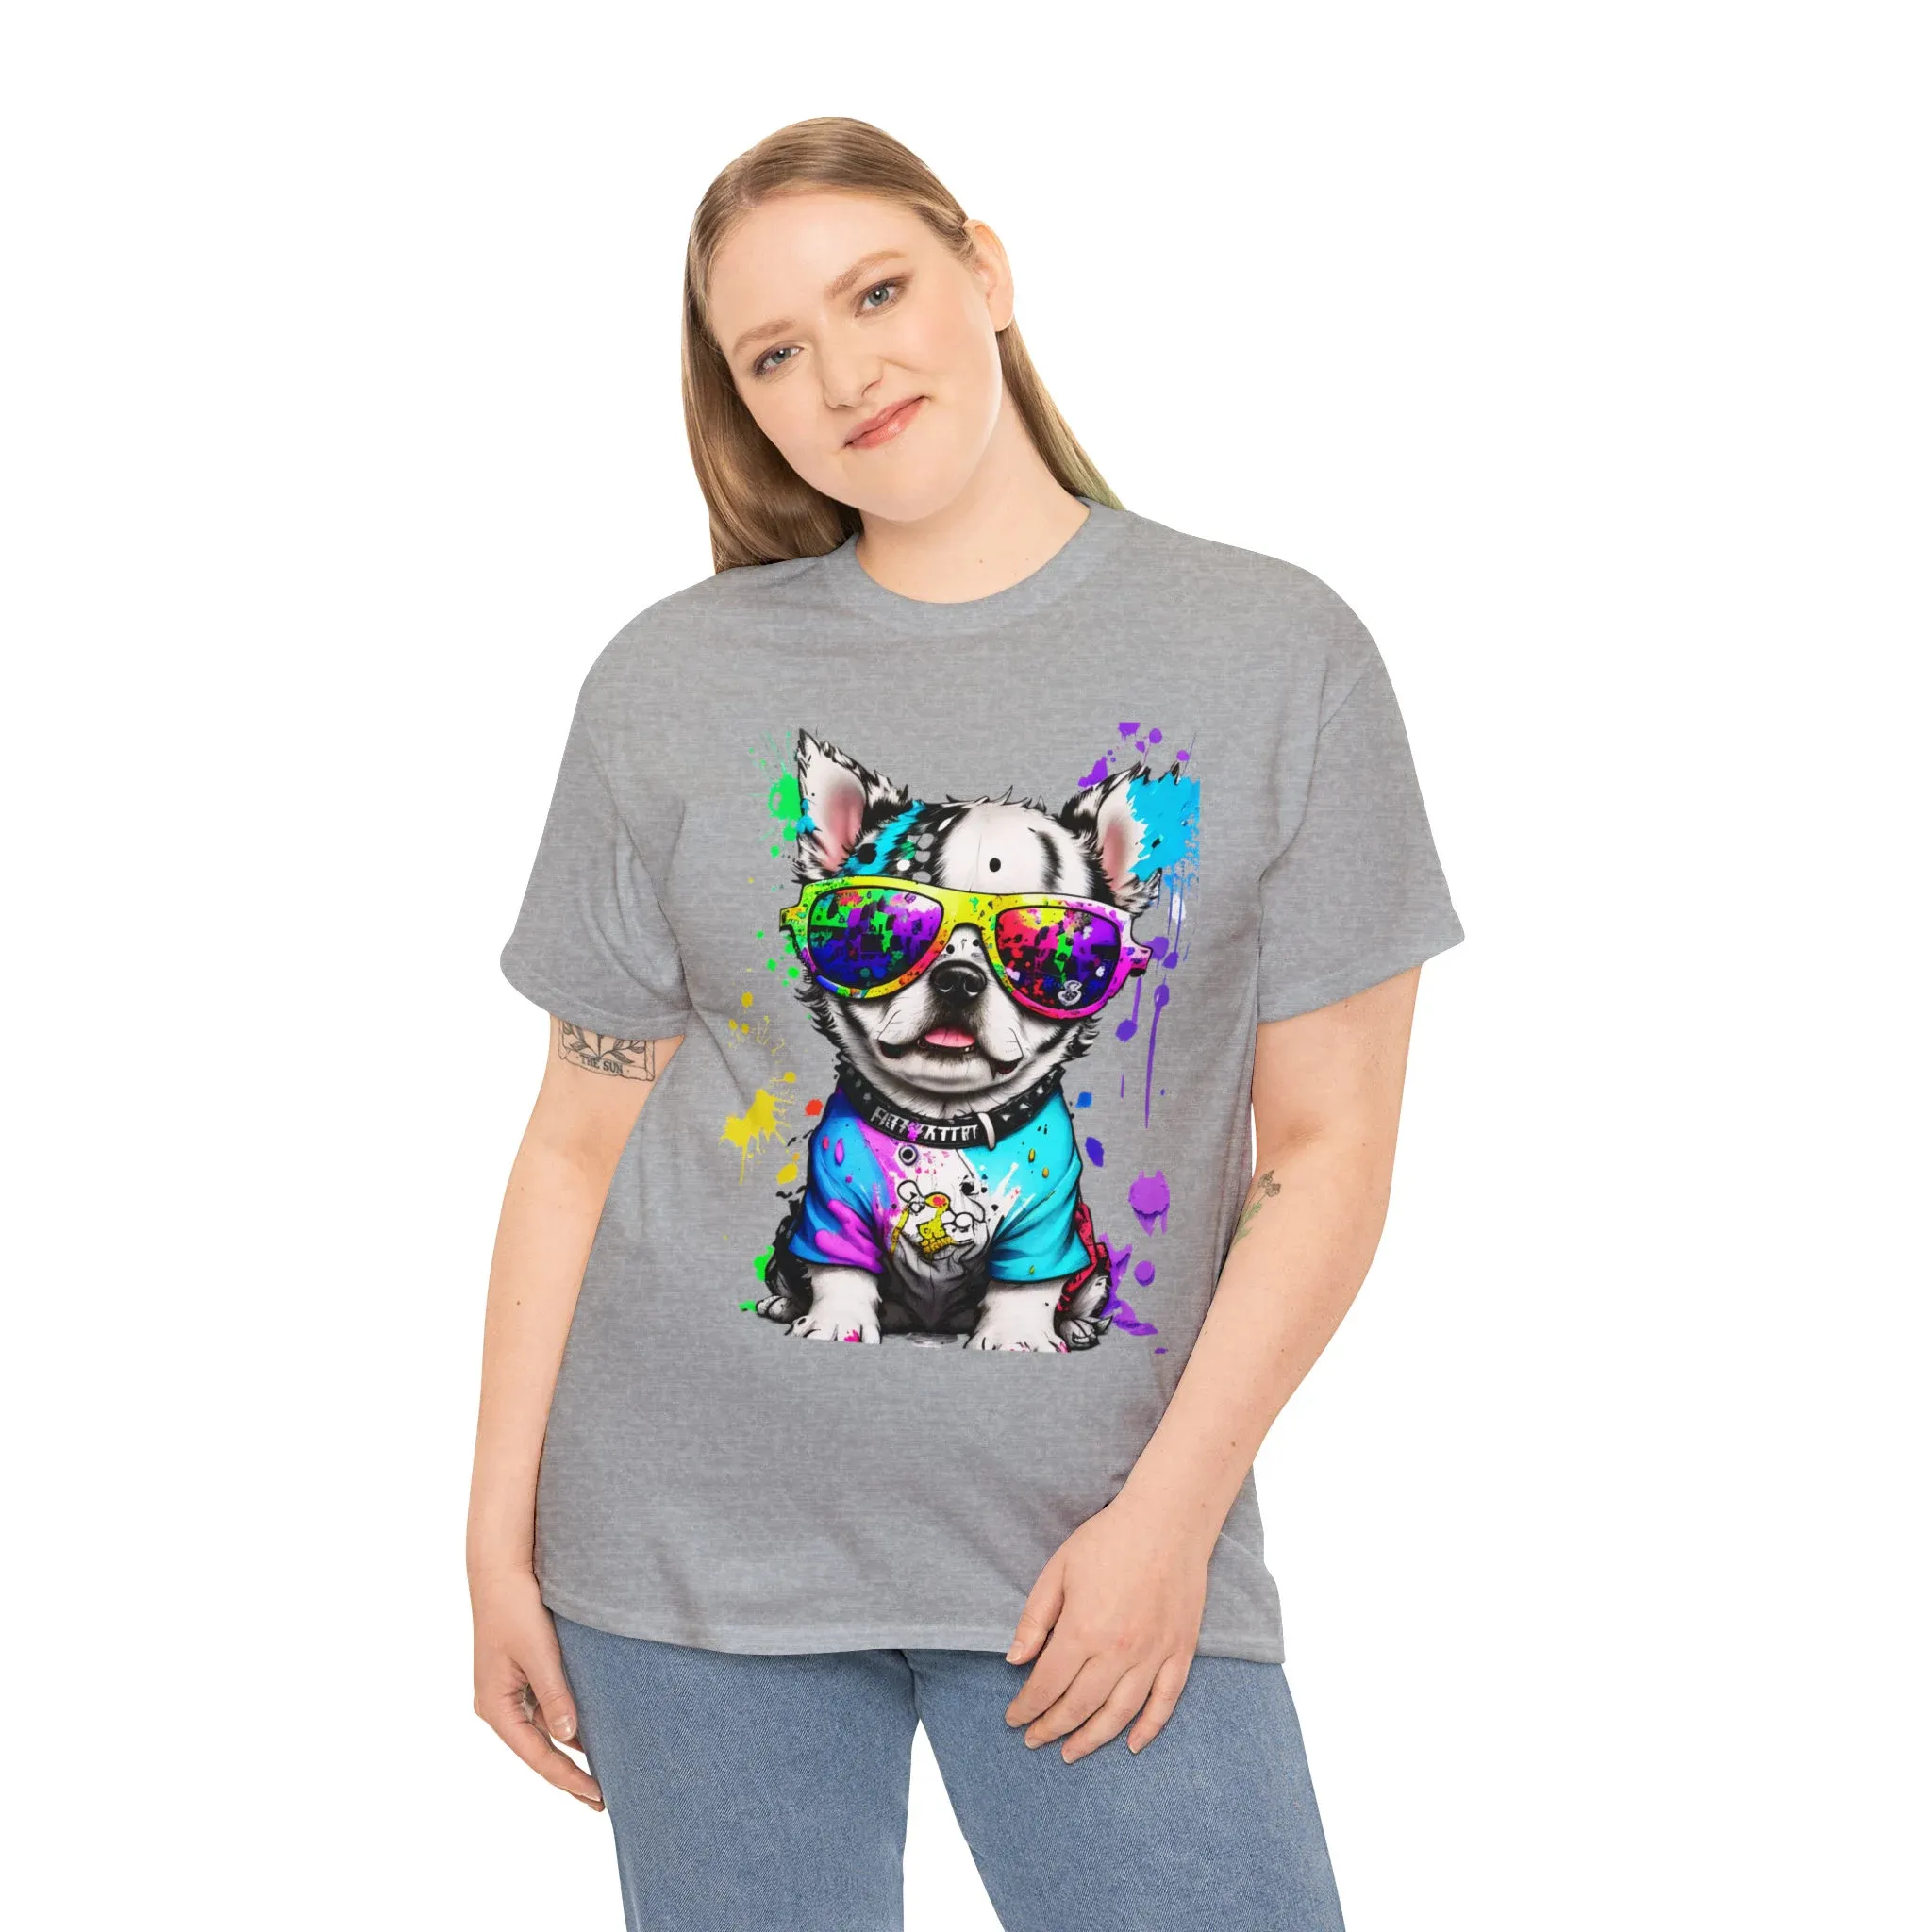 T-shirt stampata in seta USA di un cucciolo bello e colorato. T-shirt per la famiglia e gli amici. T-shirt per gli amanti dell'arte.